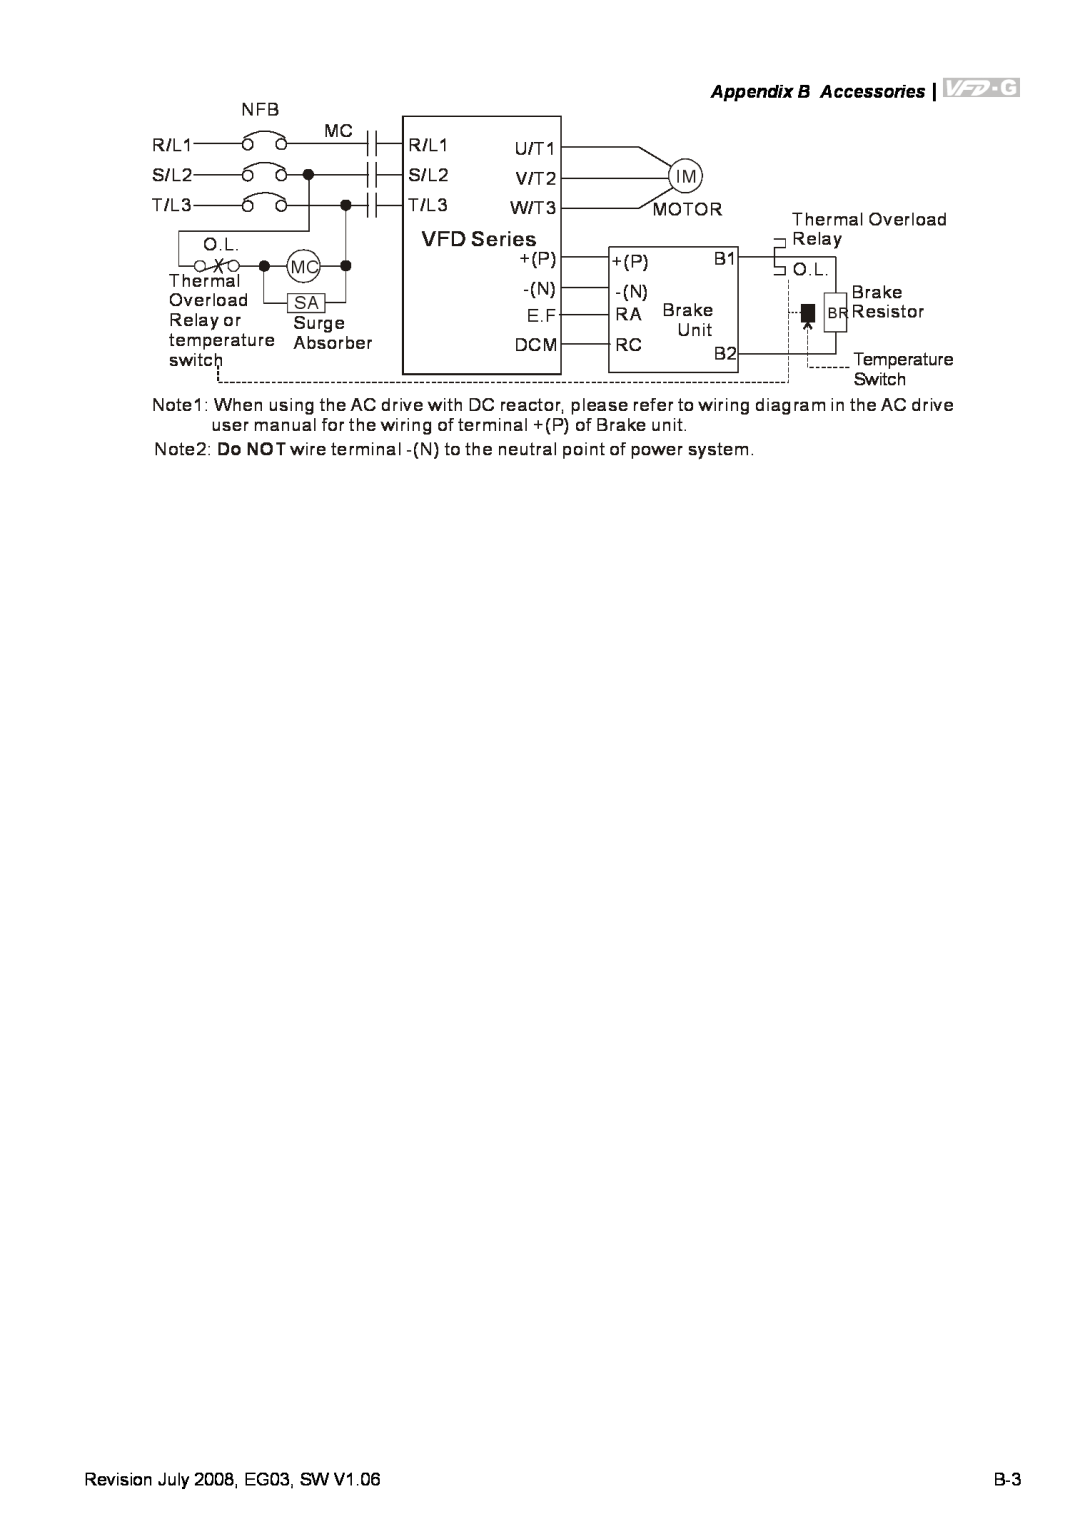 Delta Electronics VFD-G manual VFD Series, Appendix B Accessories 